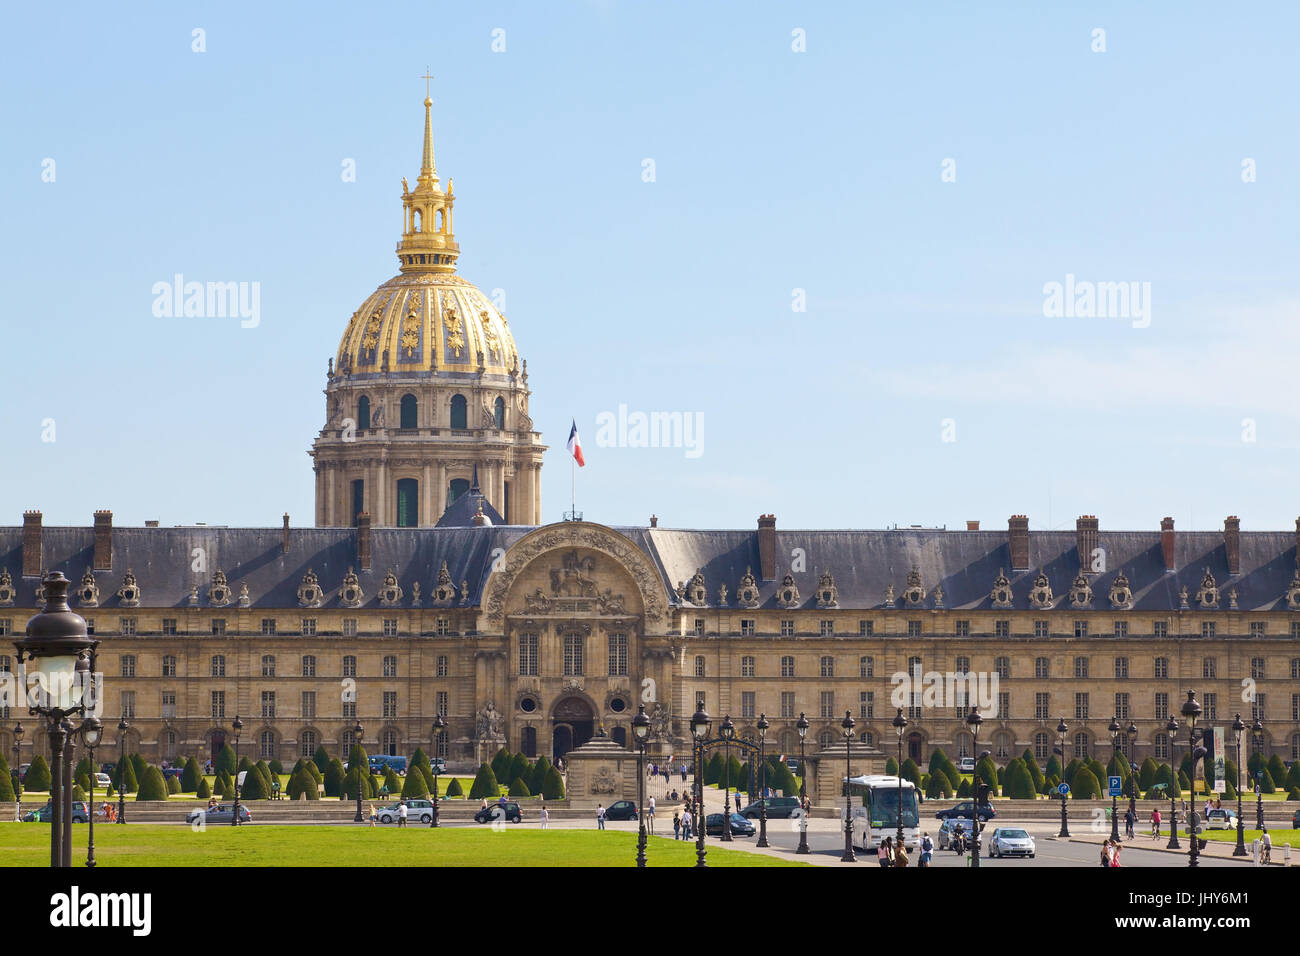 Les cathédrales de l'invalide (la cathédrale) non valide dans l'esplanade de l'invalide, Paris, France - cathédrales de la mobilité à l'Esplanade de la nullité Banque D'Images